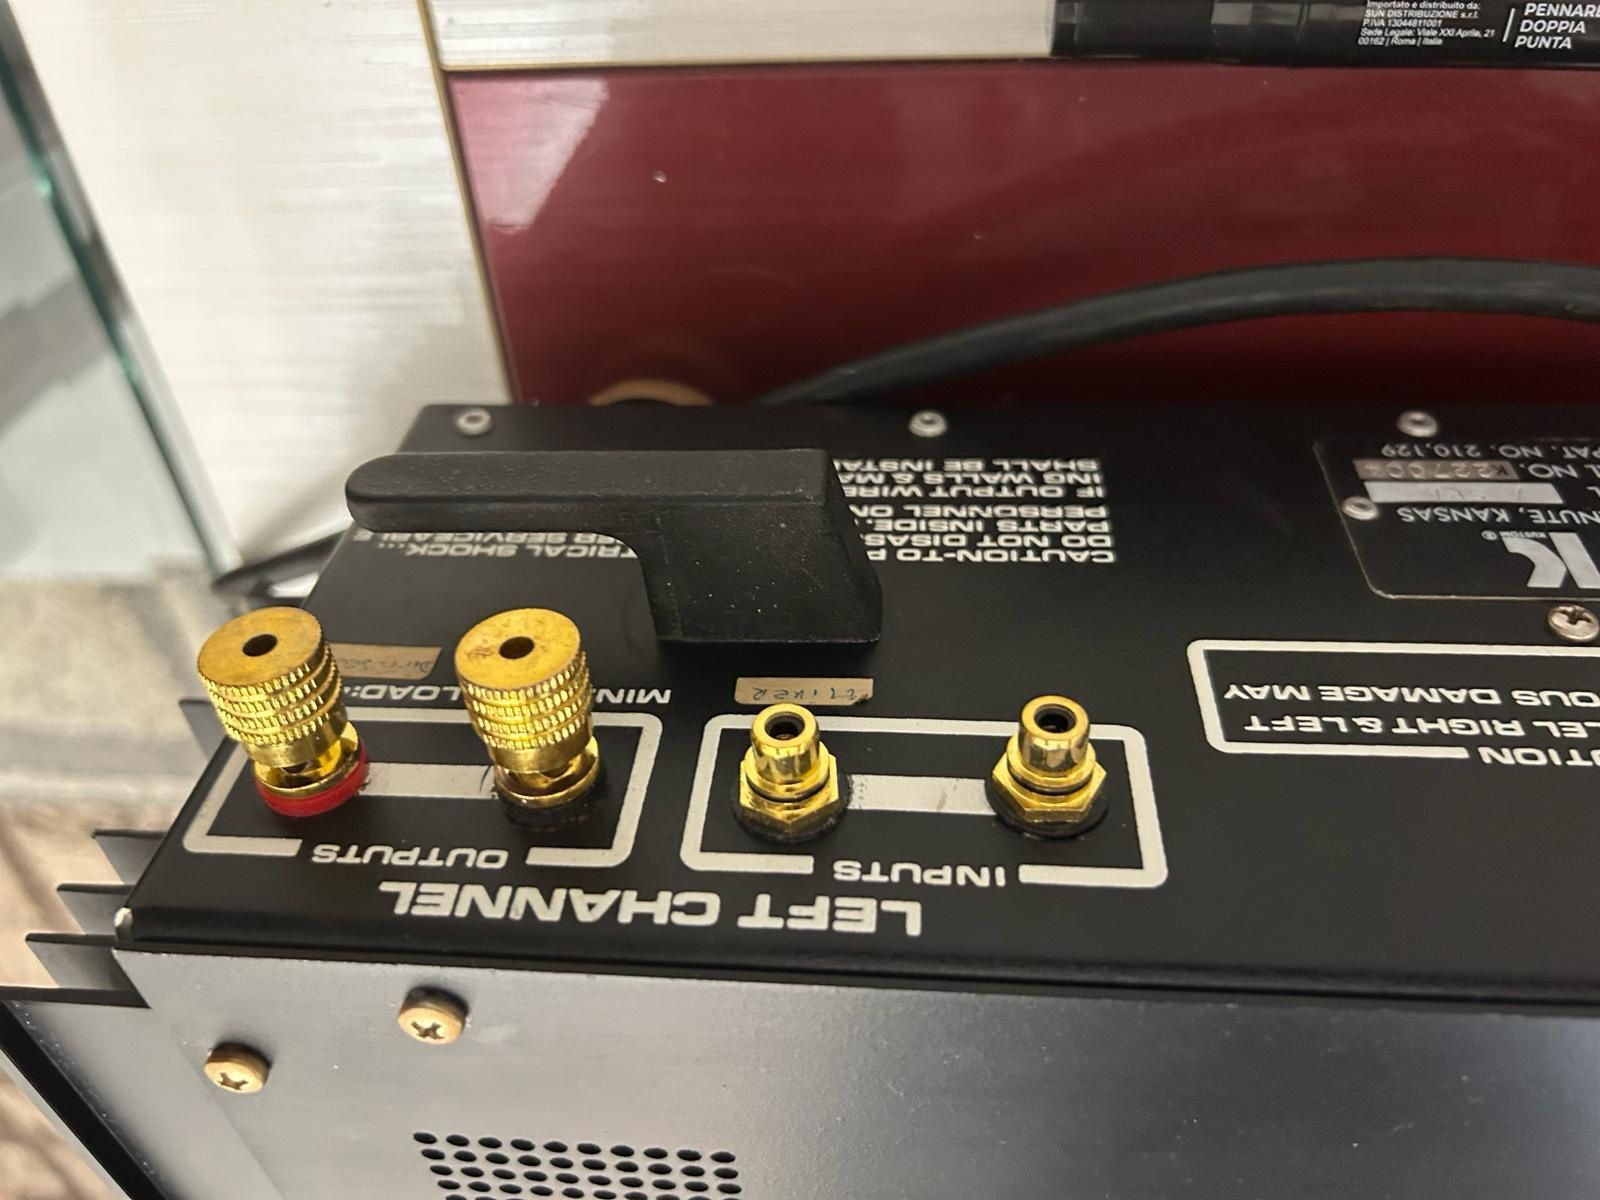 Amplificator putere usa fabr 1970  impecabila h end schimb cu preu